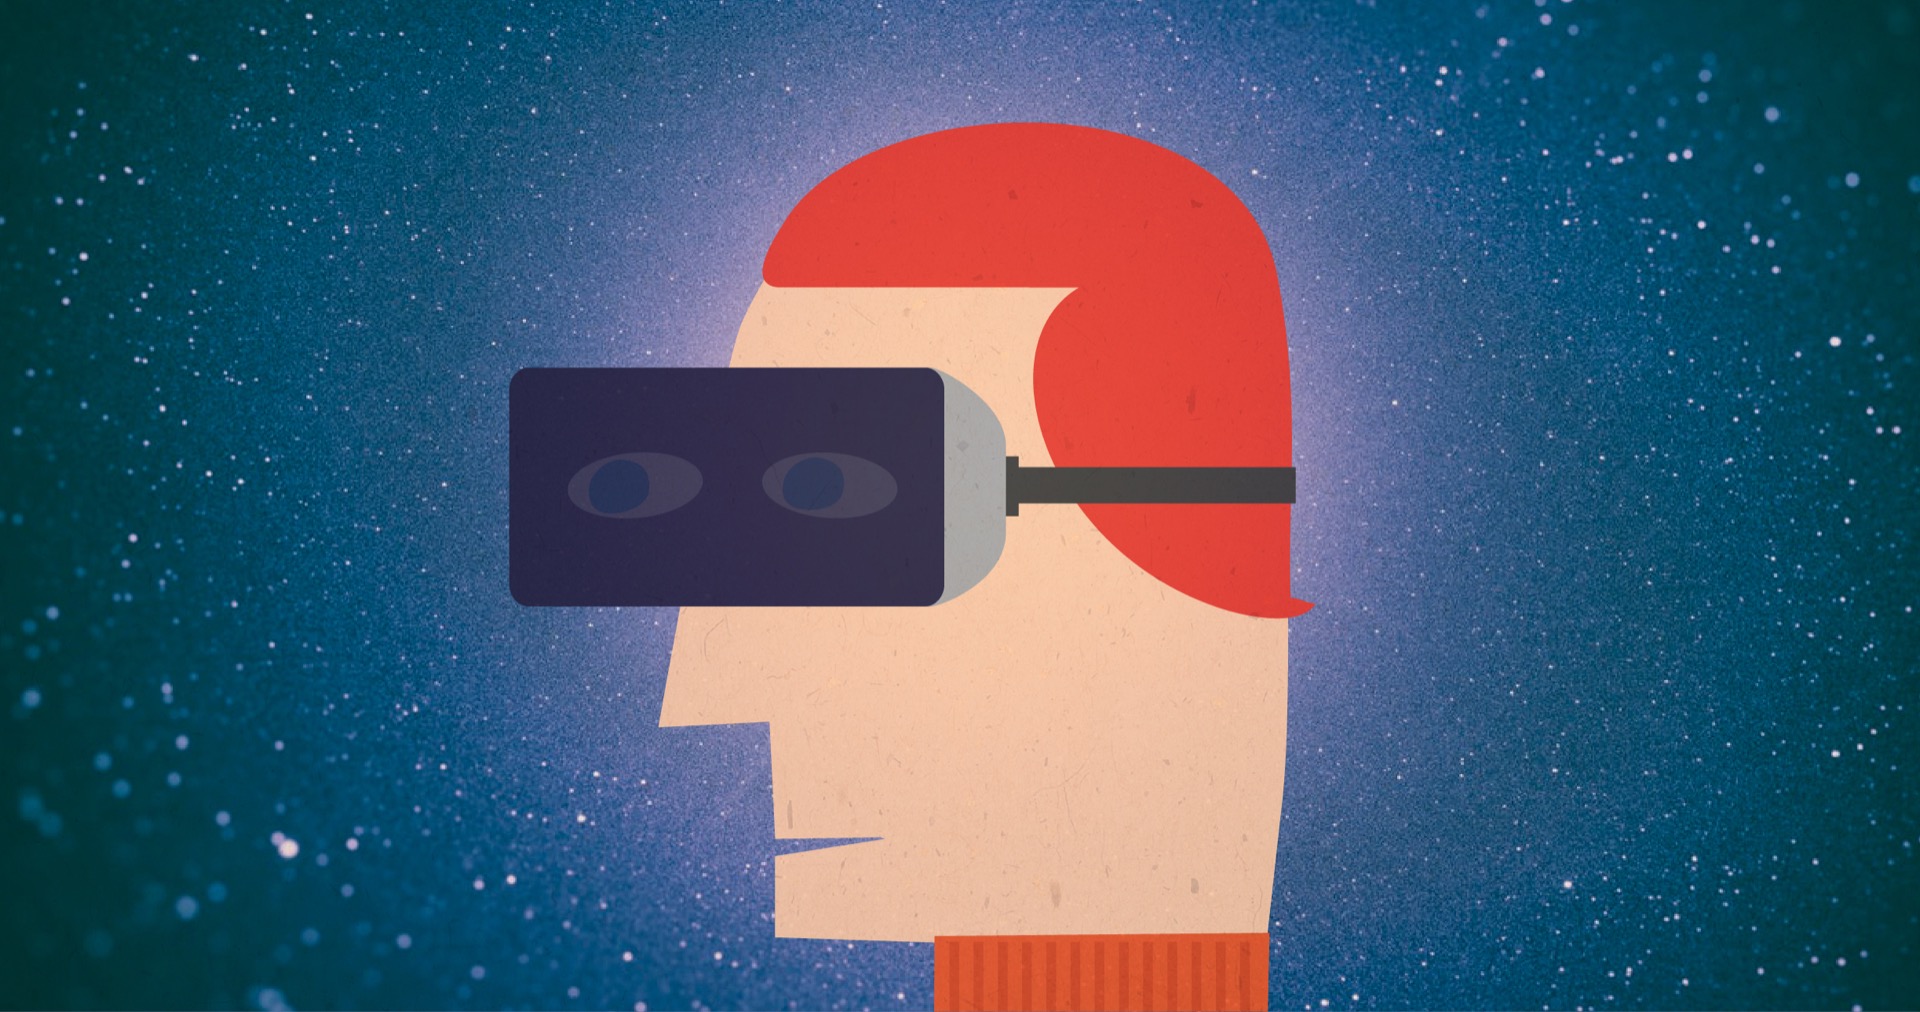 Εικονική & επαυξημένη πραγματικότητα: Το αύριο στα μάτια σου